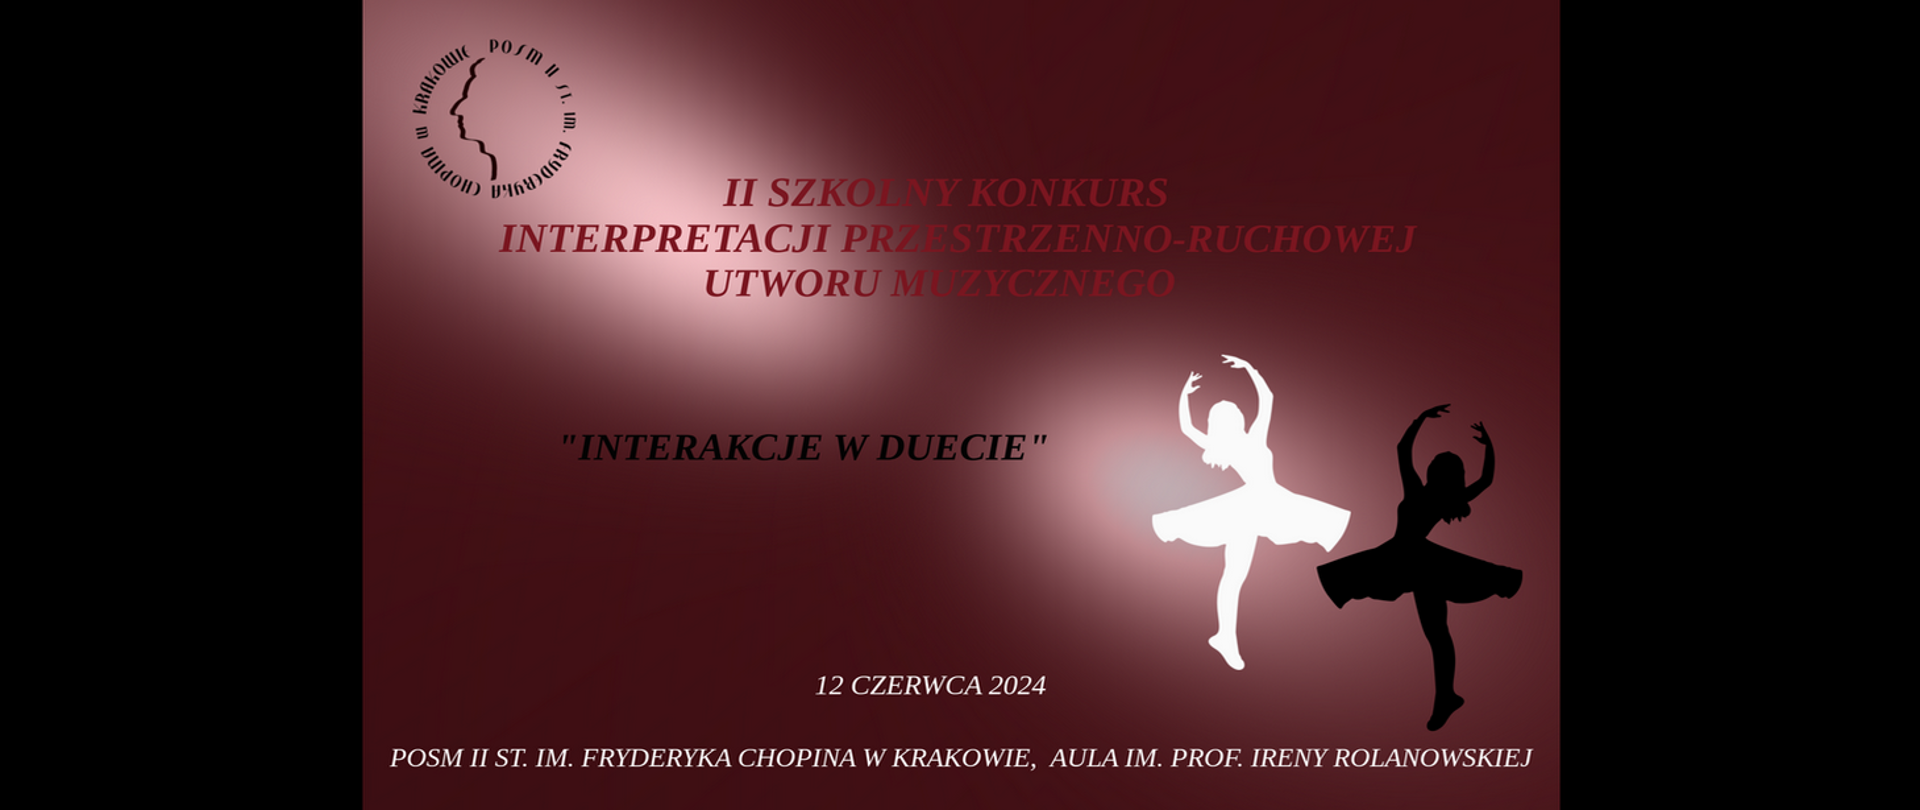 Plakat, bordowe tło, logotyp szkoły, dwie baletnice, tekst: II szkolny konkurs interpretacji przestrzenno-ruchowej utworu muzycznego, Interakcje w duecie, 12 czerwca 2024 r.